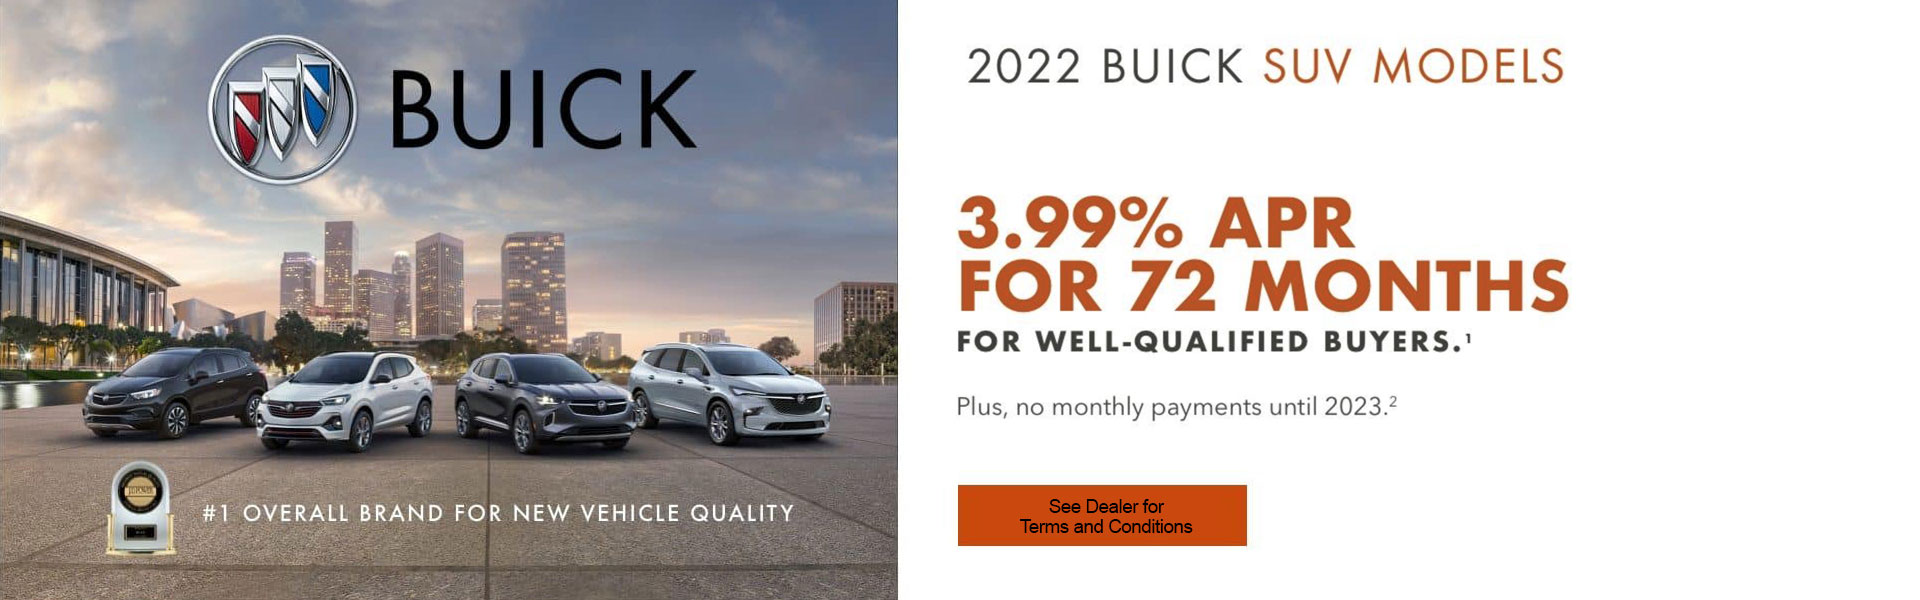 Buick 3.99